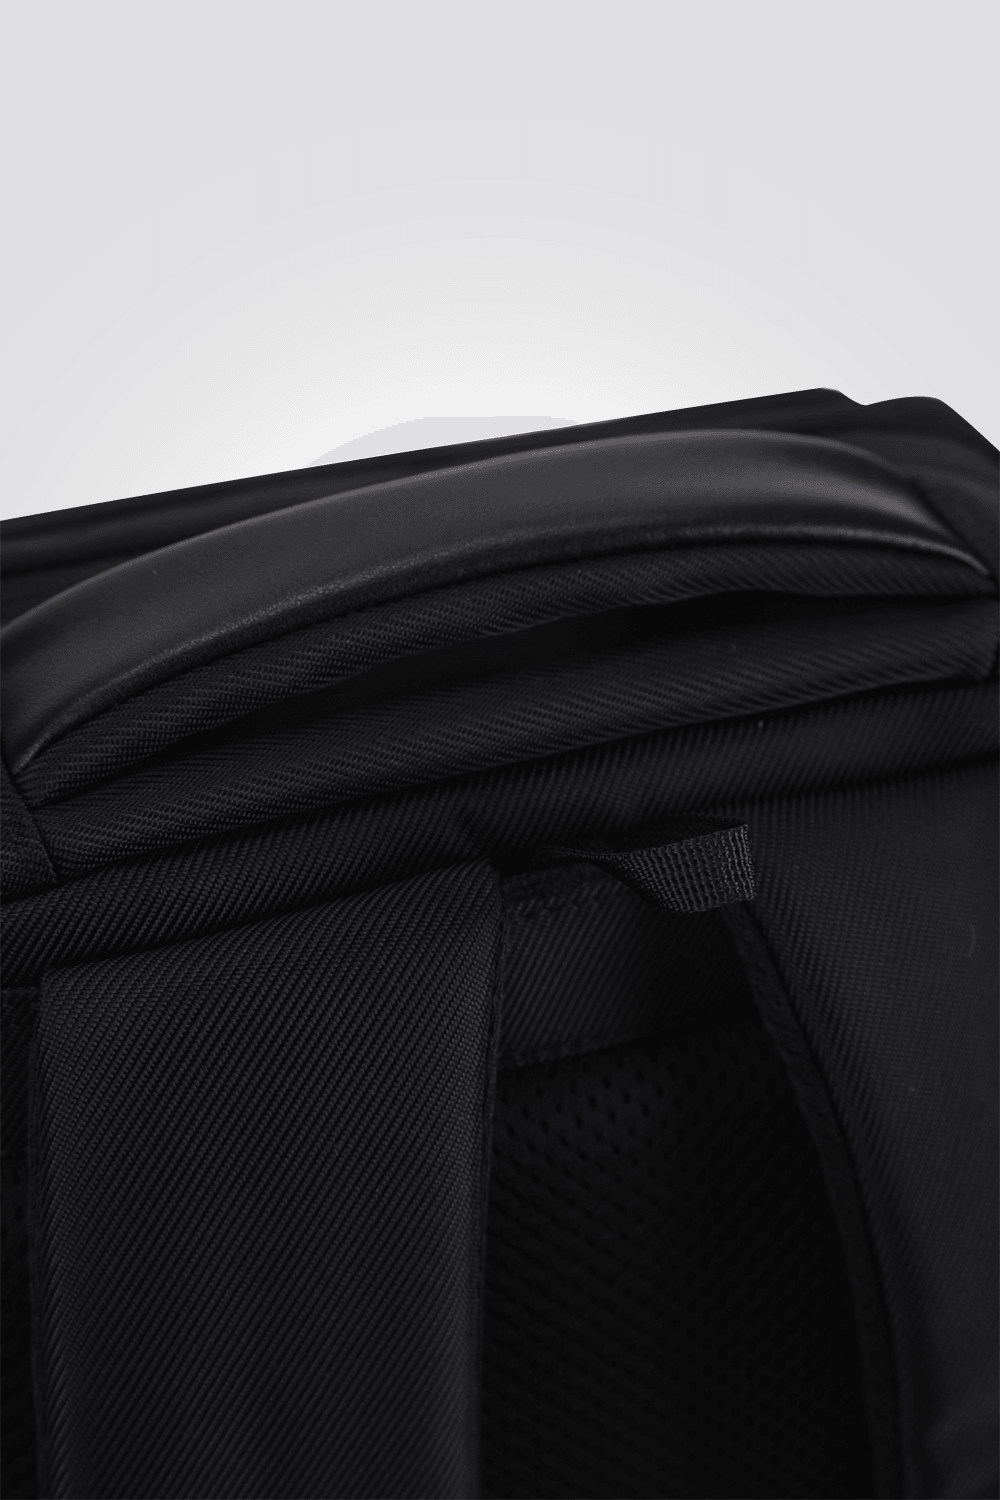 KENNETH COLE - תיק גב לגבר בצבע שחור - MASHBIR//365